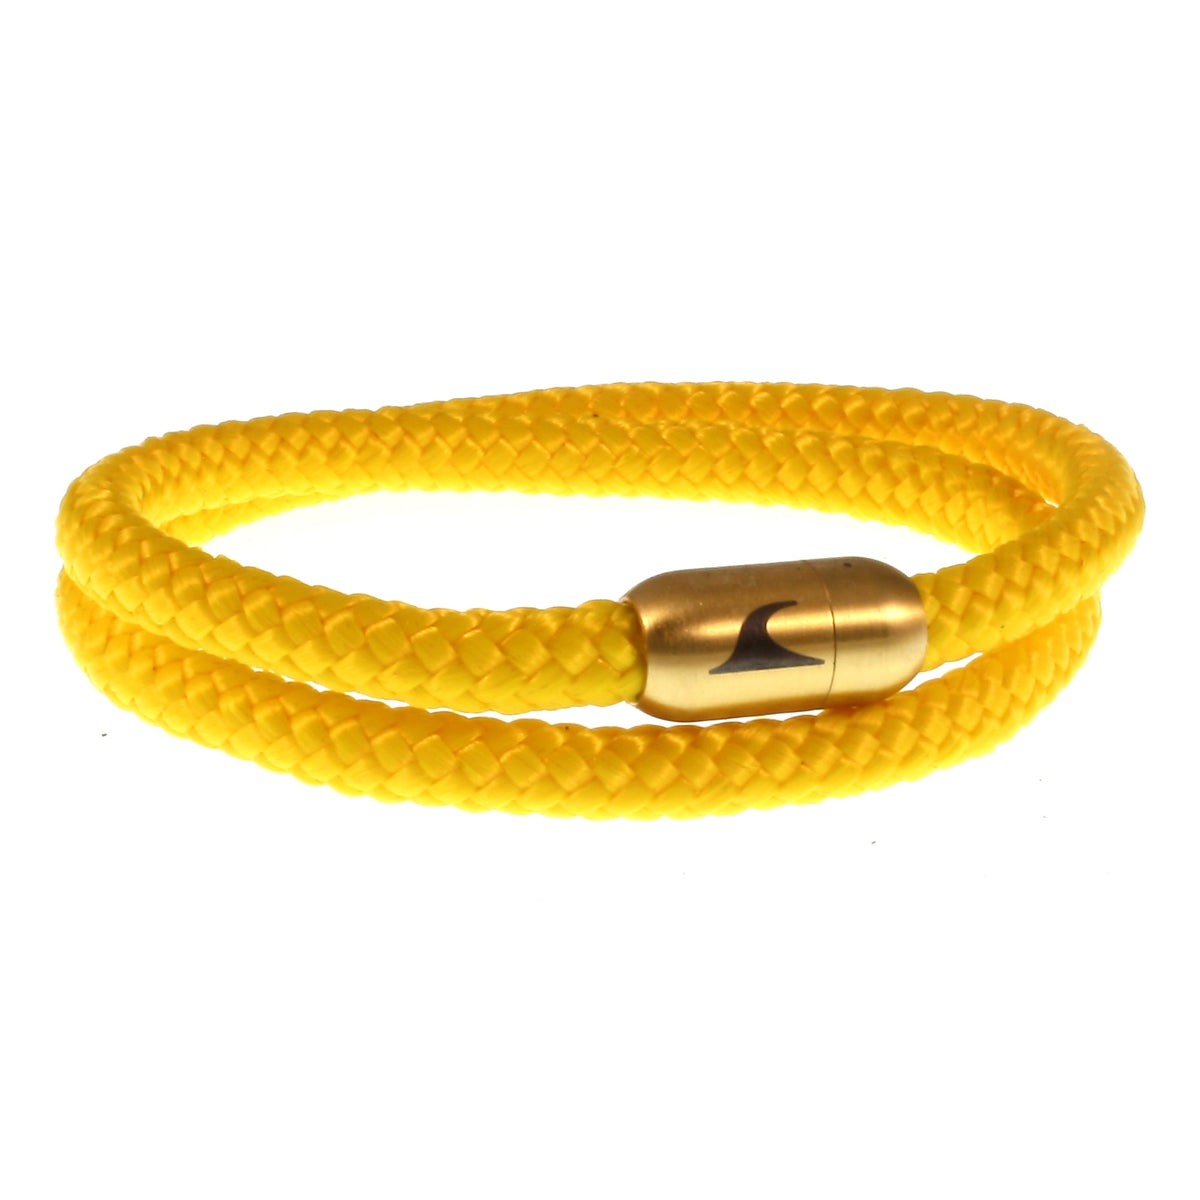 Herren-Segeltau-Armband-damen-hawaii-gelb-gold-Edelstahlverschluss-vorn-wavepirate-shop-st